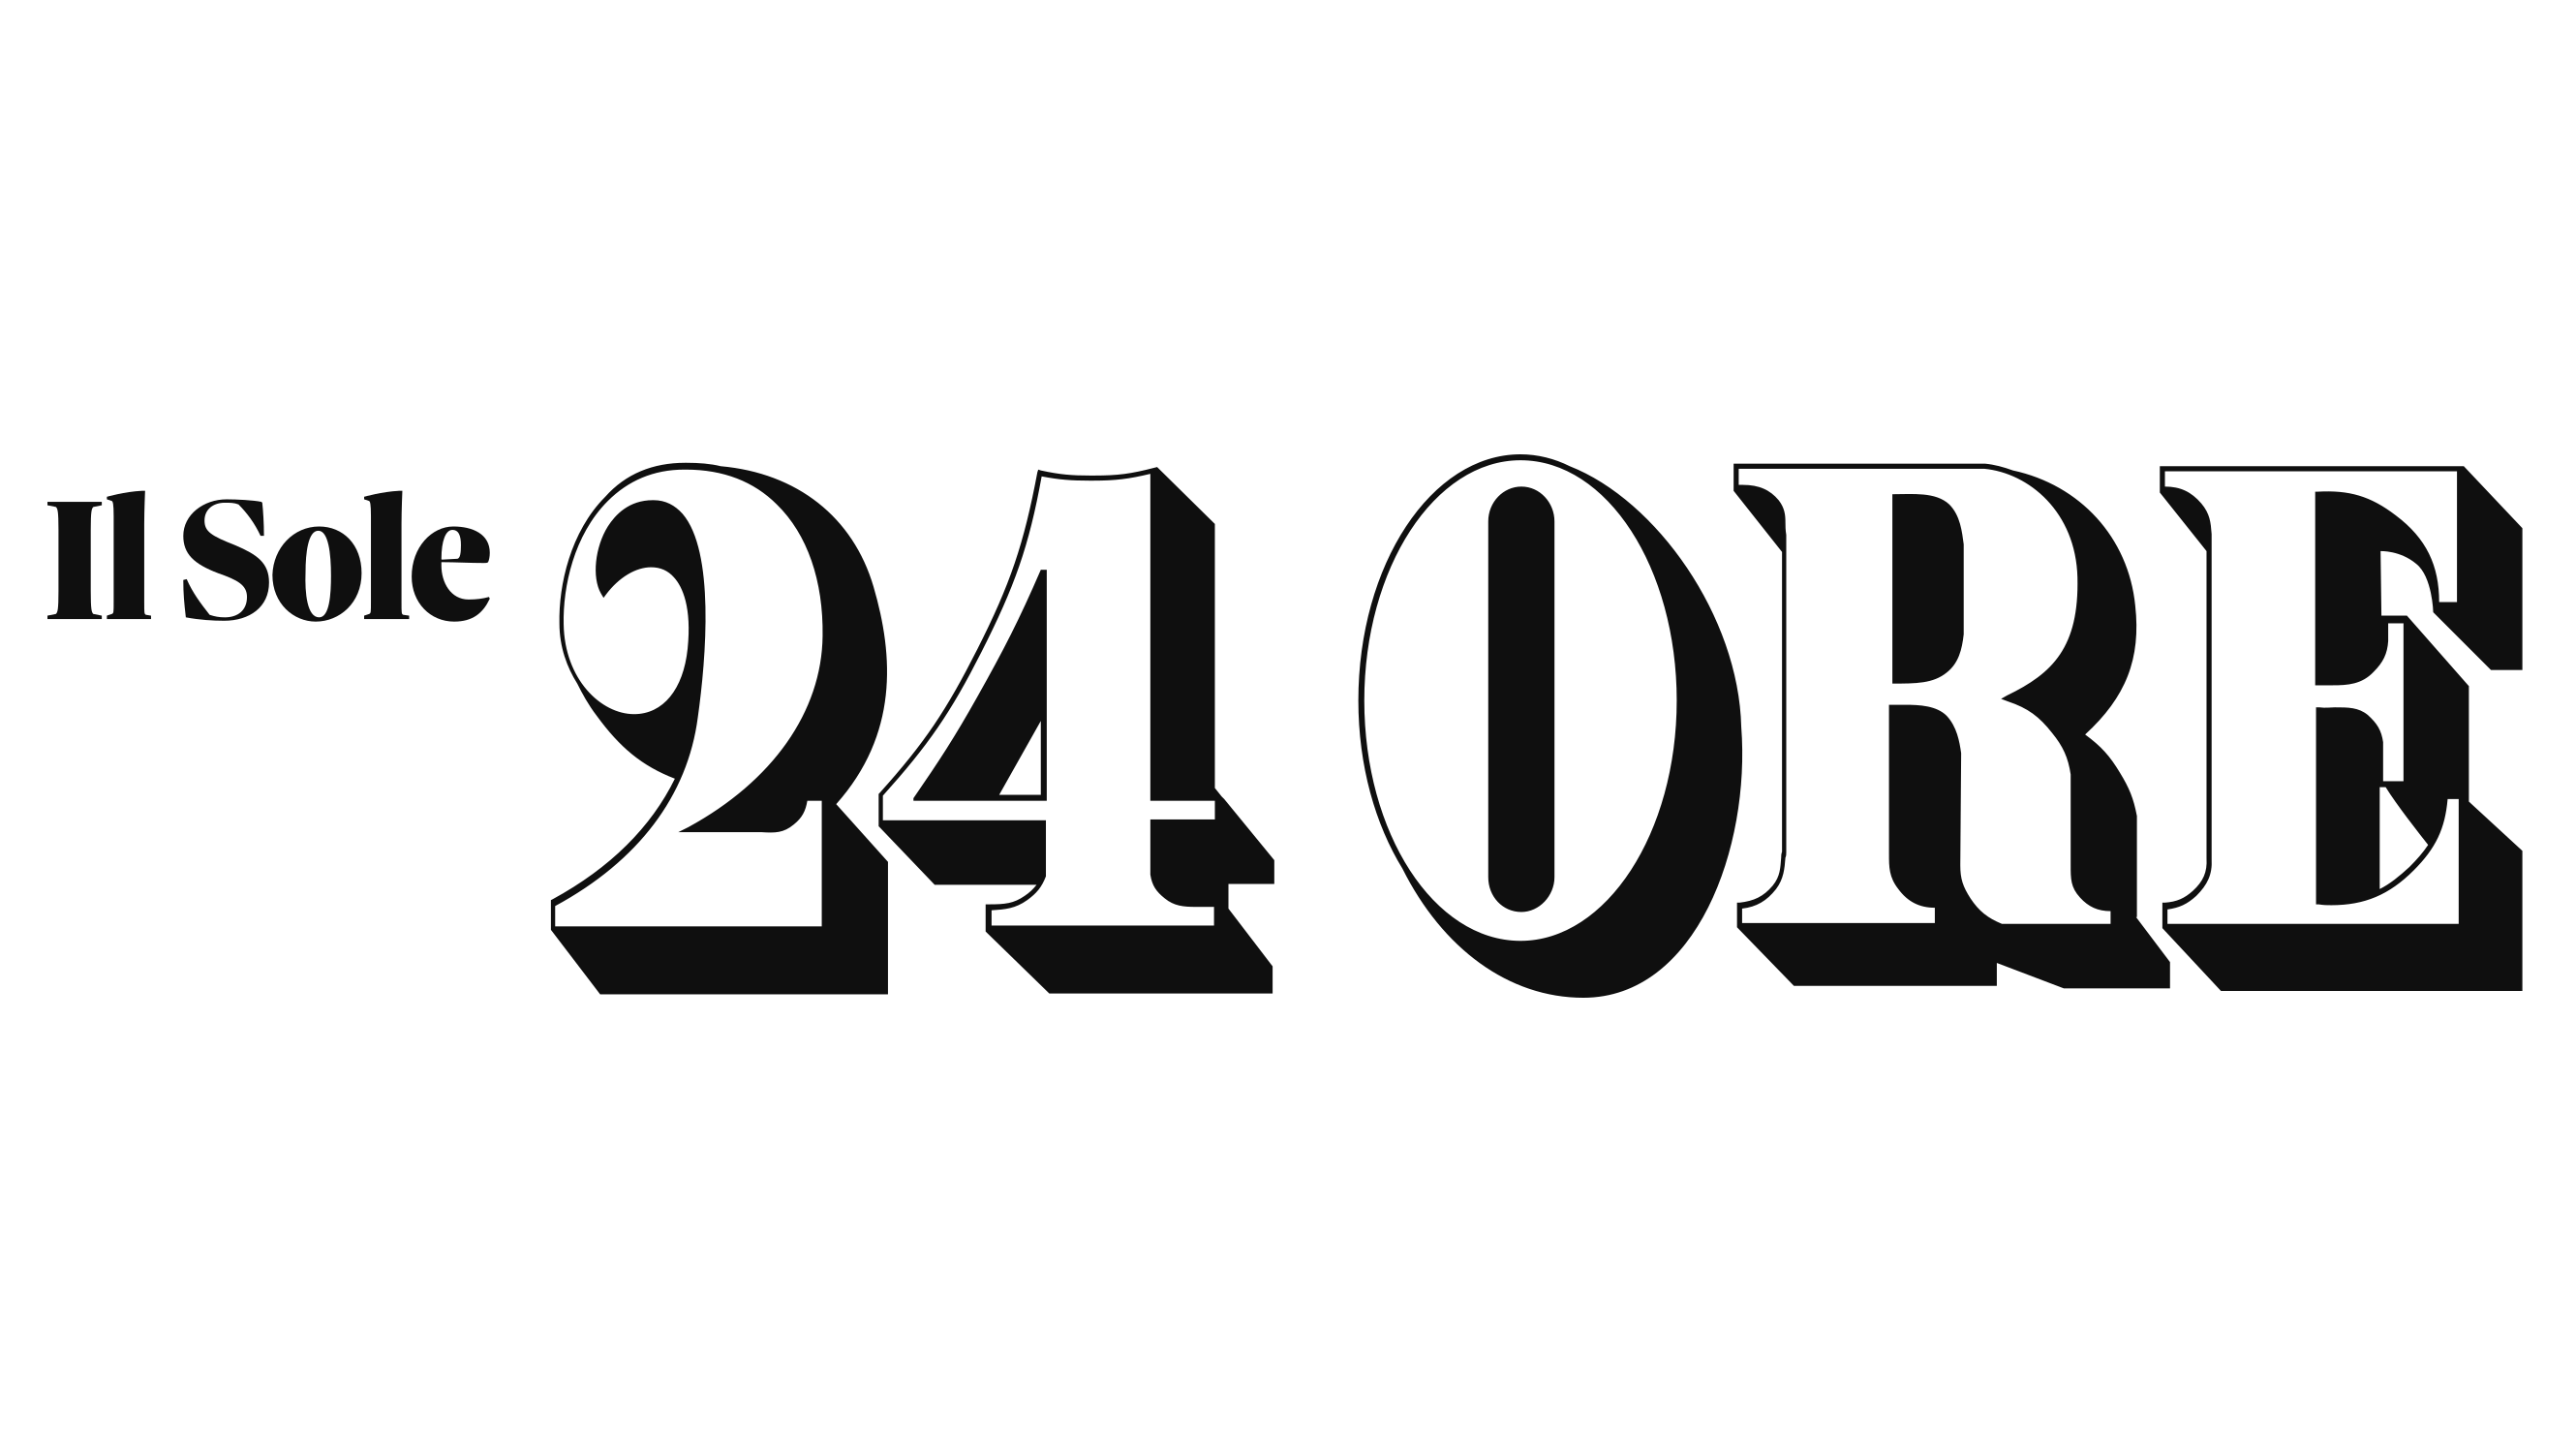 Il Sole 24 ore logo